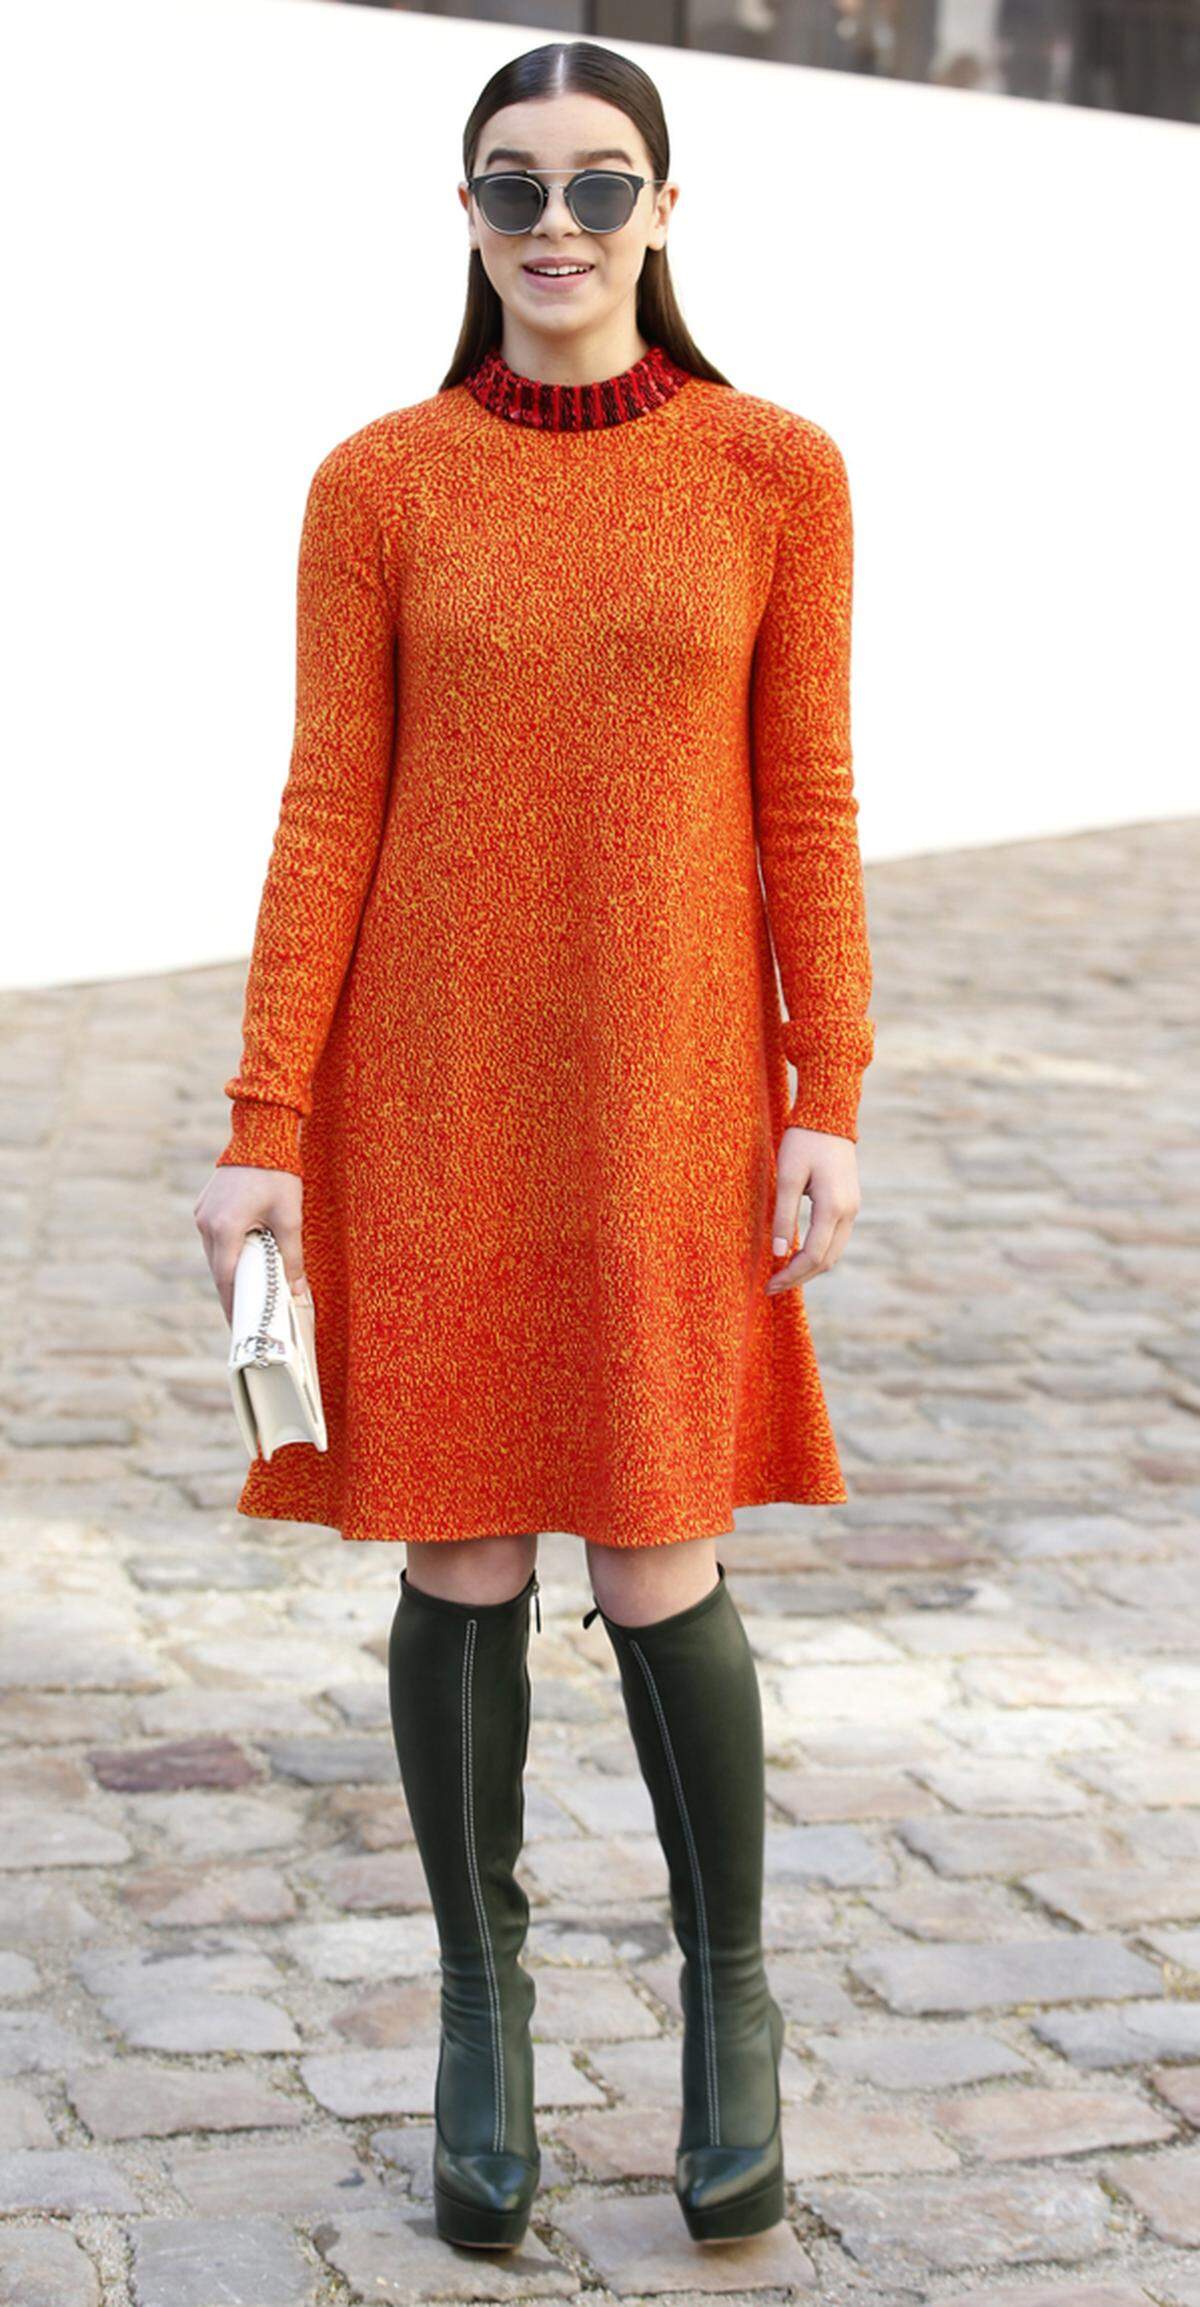 Schauspiel-Kollegin Hailee Steinfeld machte im orangen Wollkleid eine gute Figur.